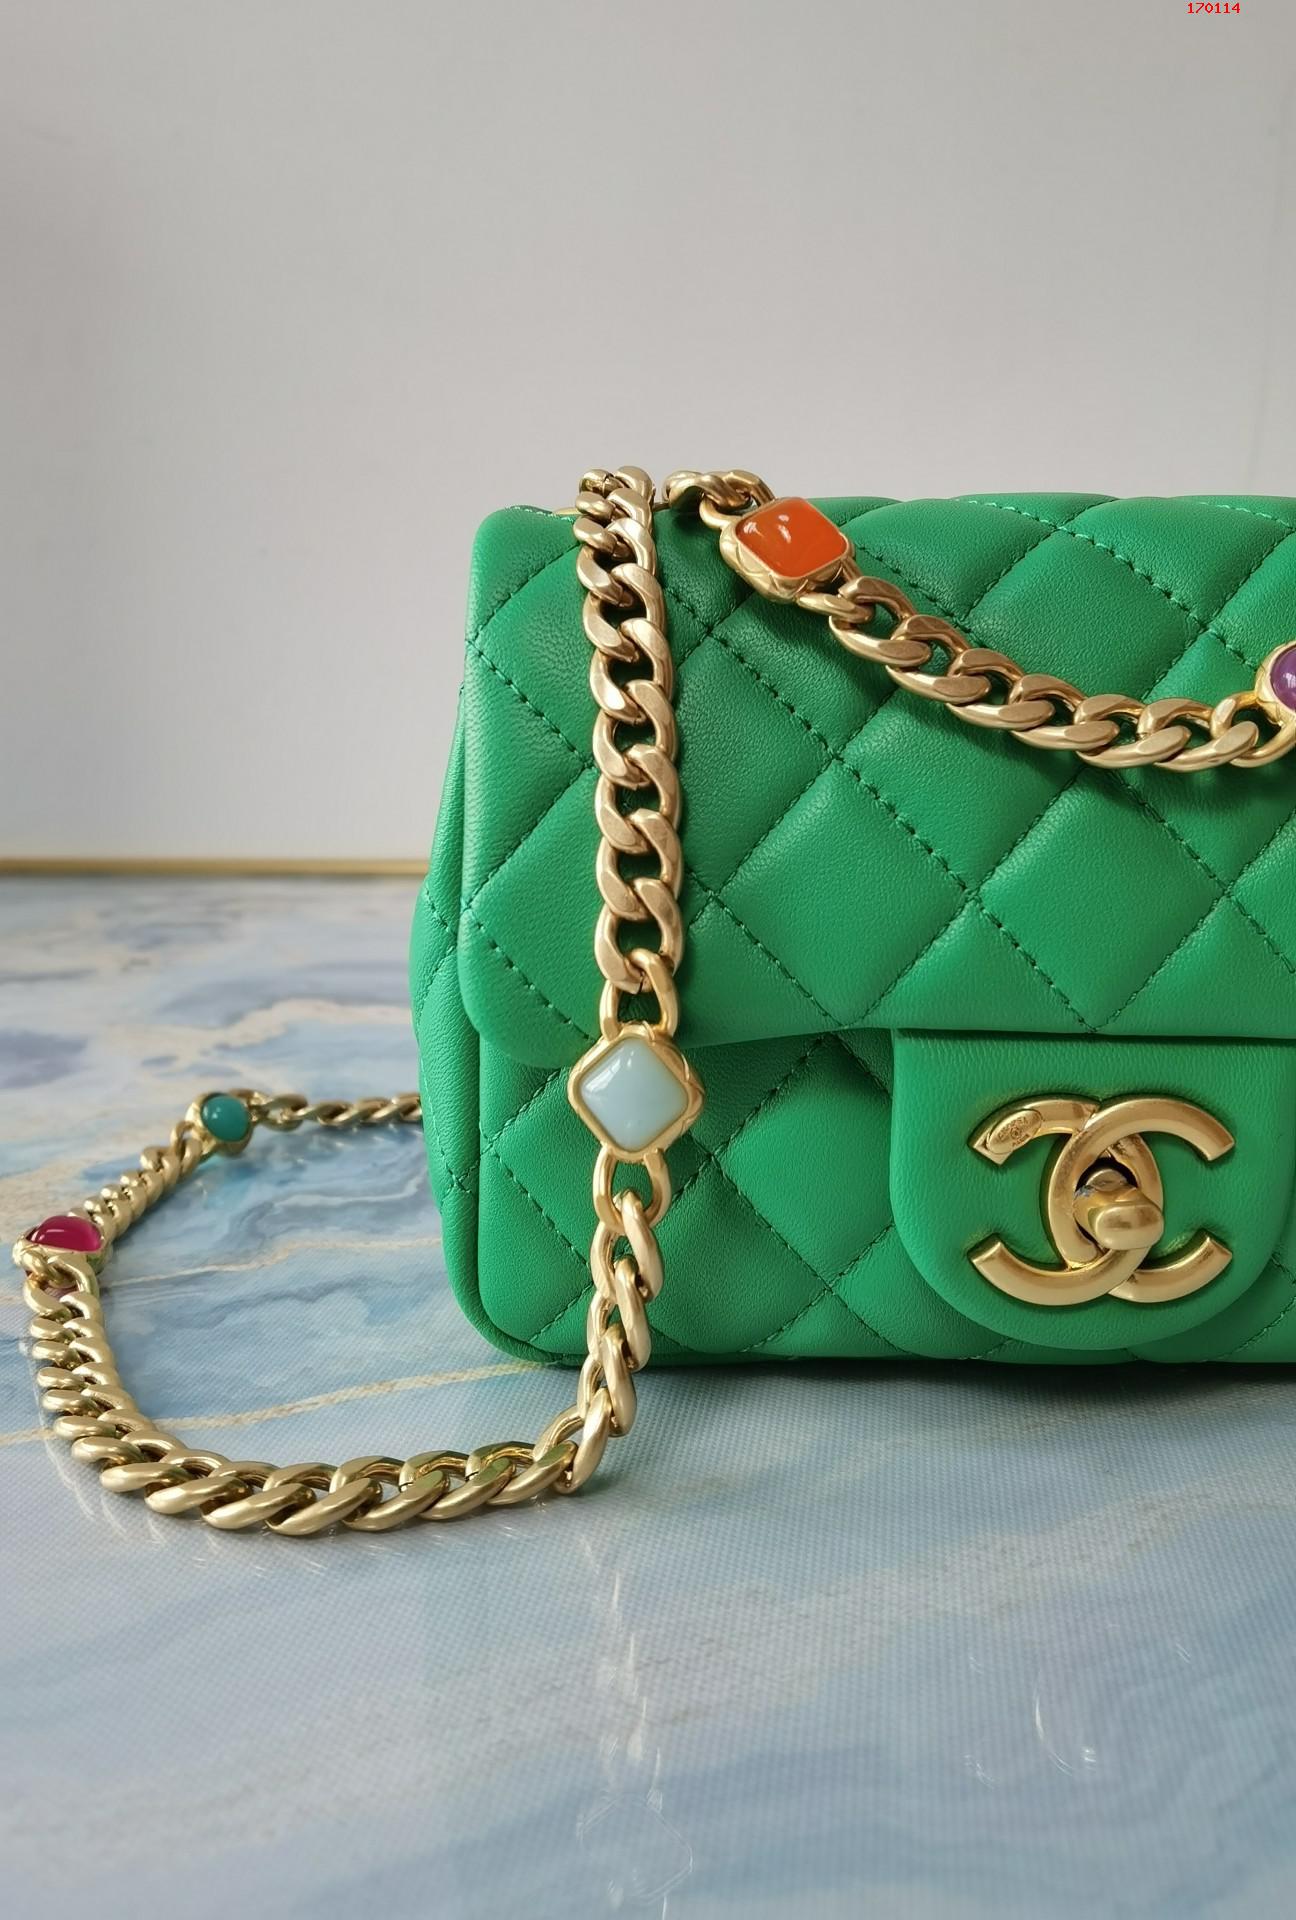 Chanel 草绿色 21早春宝石链条包 爆款五彩宝石口盖包 高仿香奈儿链条包 AS2379